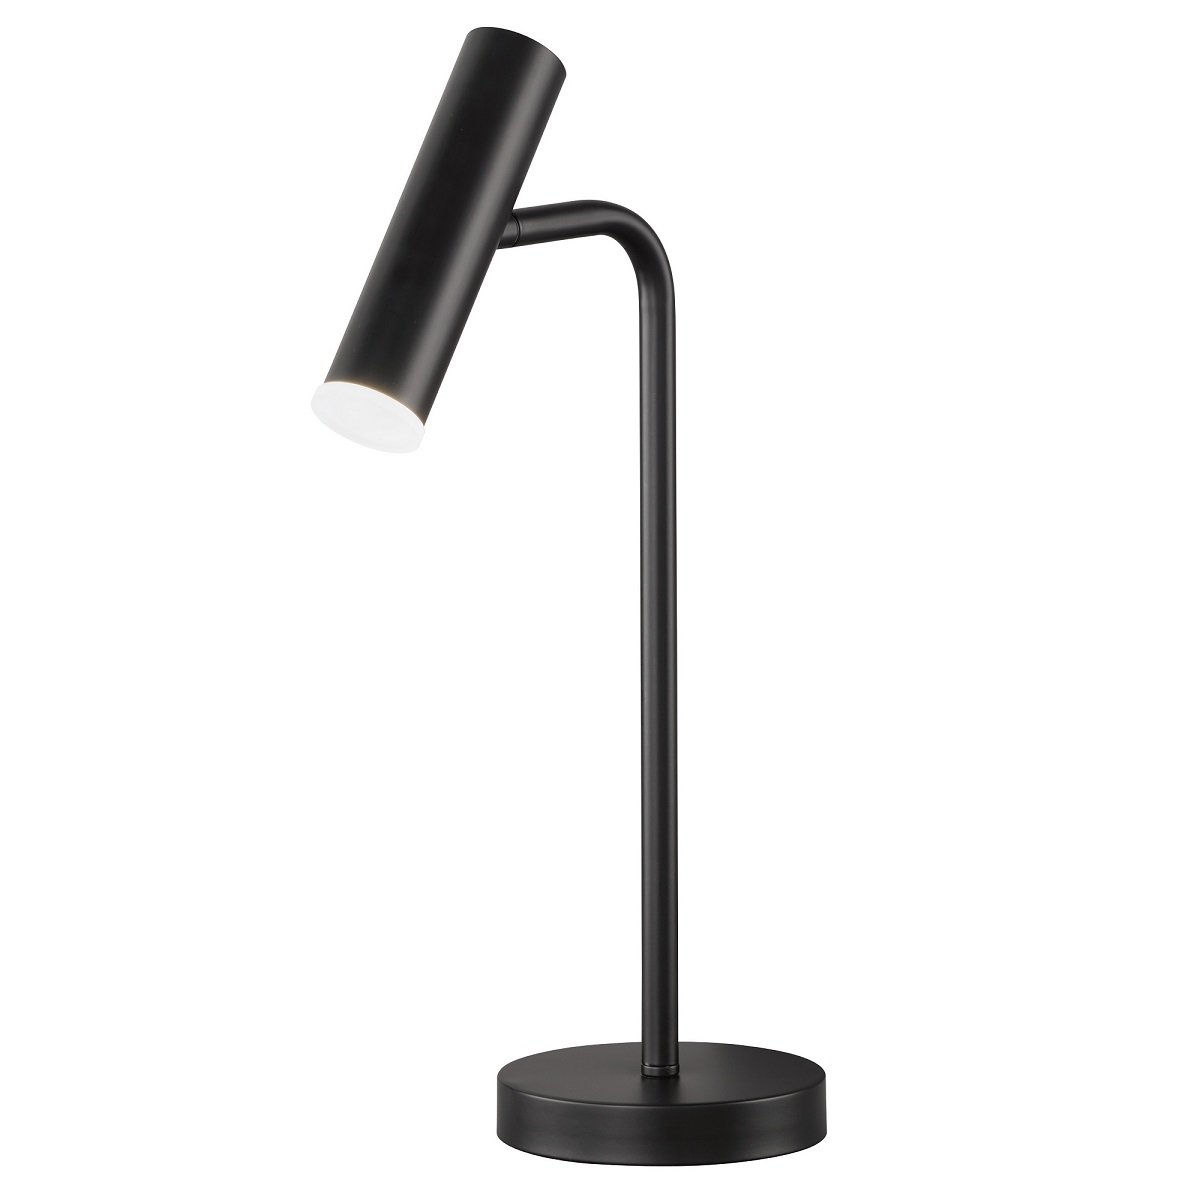 SCHÖNER WOHNEN-Kollektion LED-Tischleuchte STINA dimmbar schwarz 850299 -->  Leuchten & Lampen online kaufen im Shop